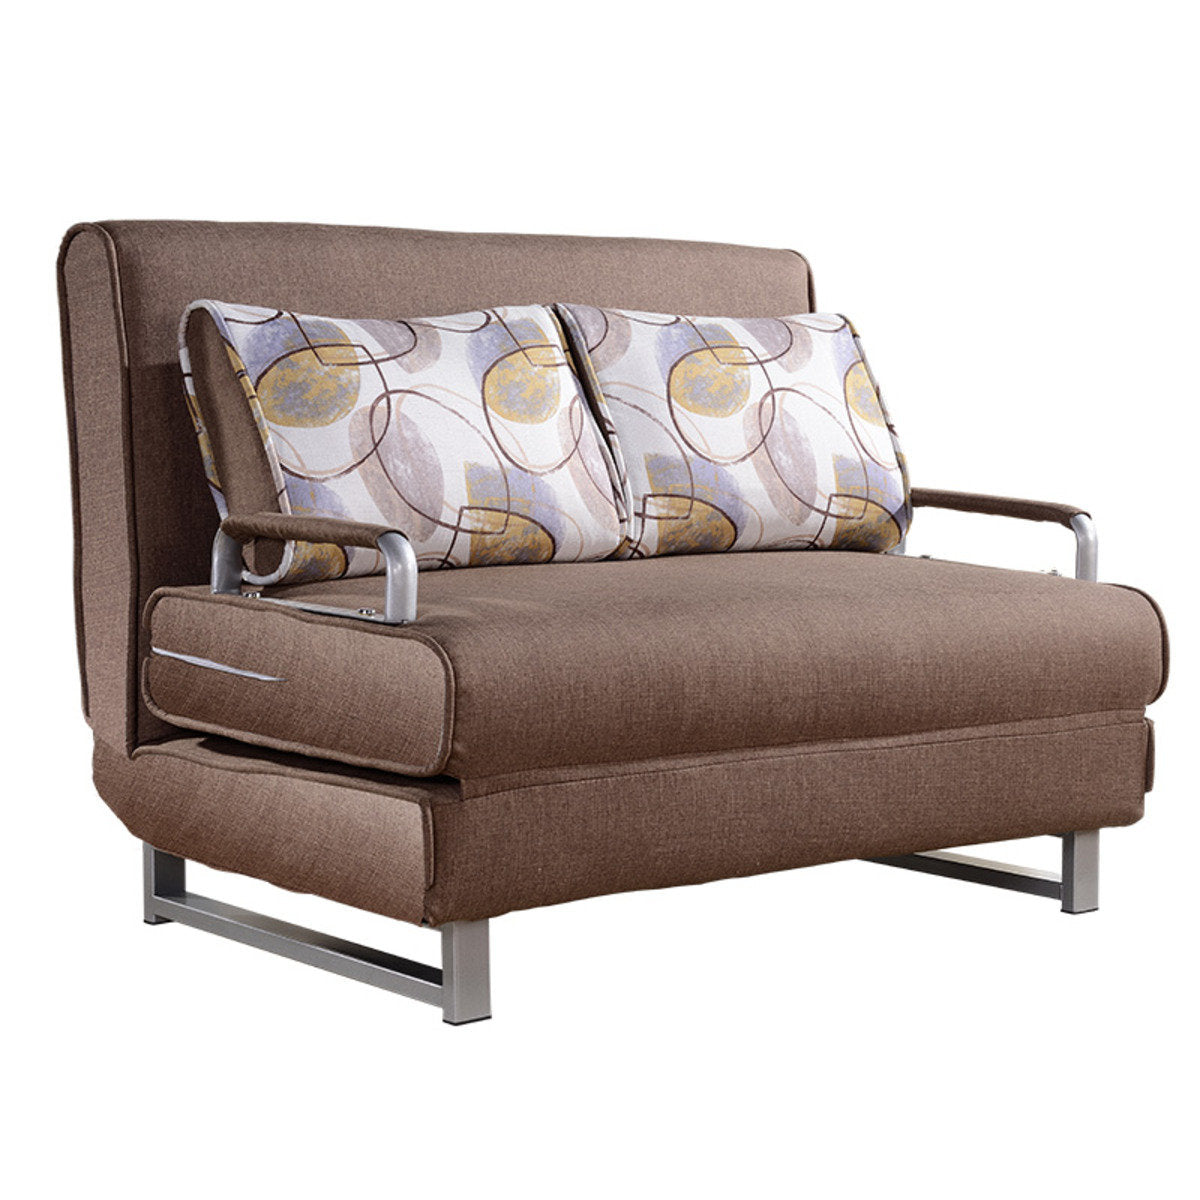 MerryRabbit – MR-826 1.5m雙人座位折疊梳化床可拆洗 1.5m  2-Seater Foldable Sofa Bed